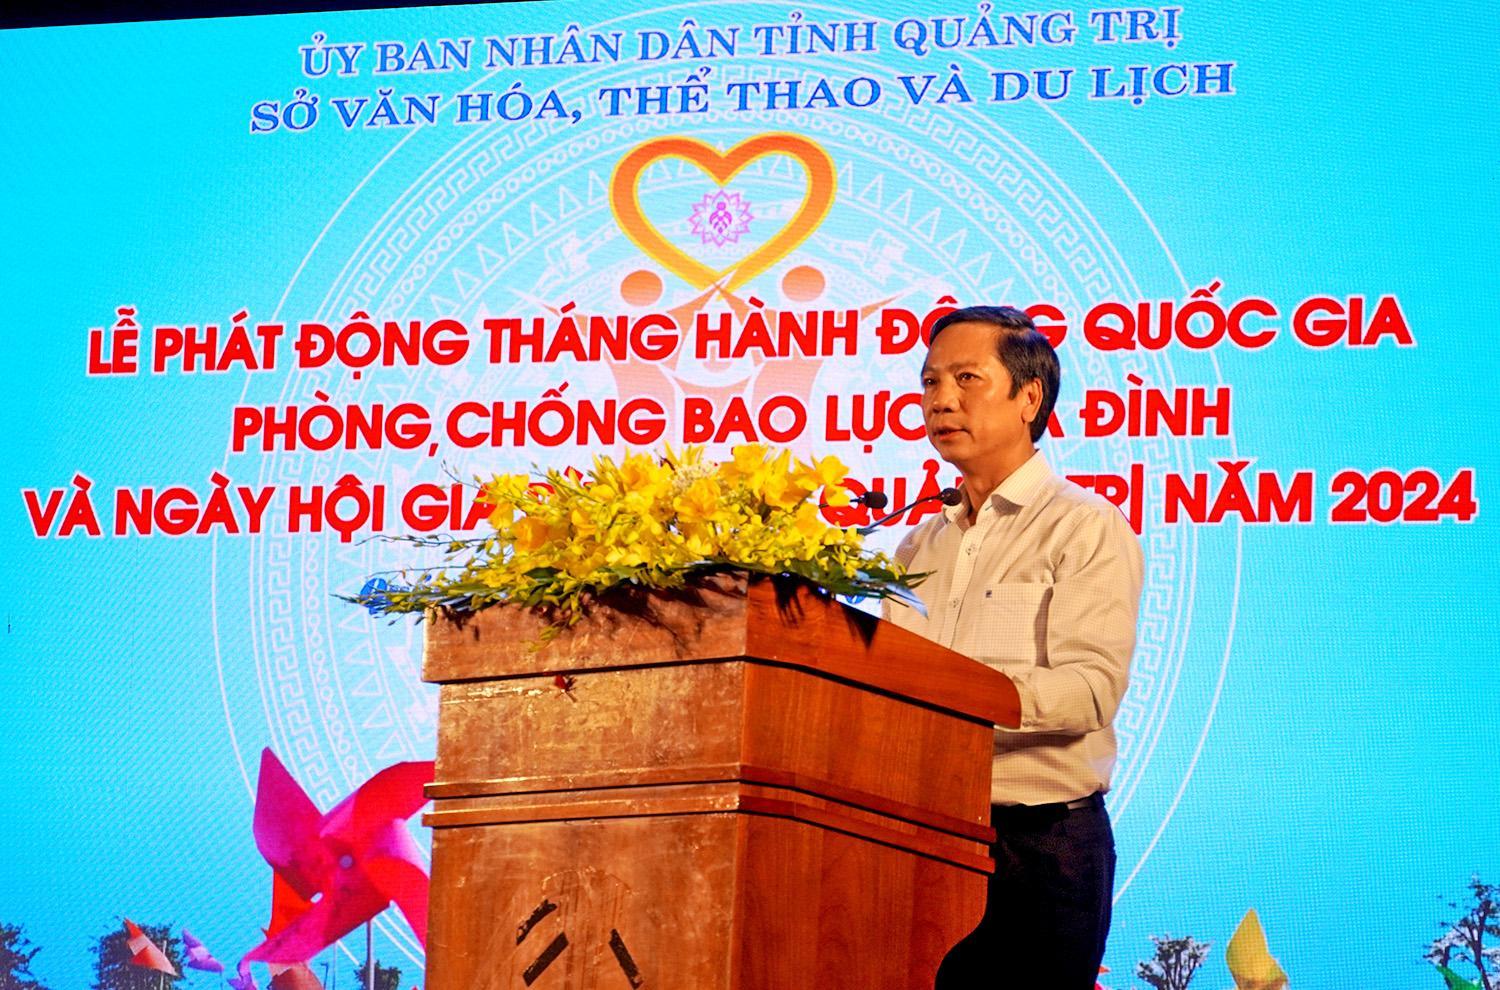 Ông Hoàng Nam, Phó chủ tịch UBND tỉnh Quảng Trị, đồng thời là Trưởng Ban chỉ đạo Phong trào Toàn dân đoàn kết xây dựng đời sống văn hóa và công tác gia đình tỉnh phát biểu tại buổi lễ.